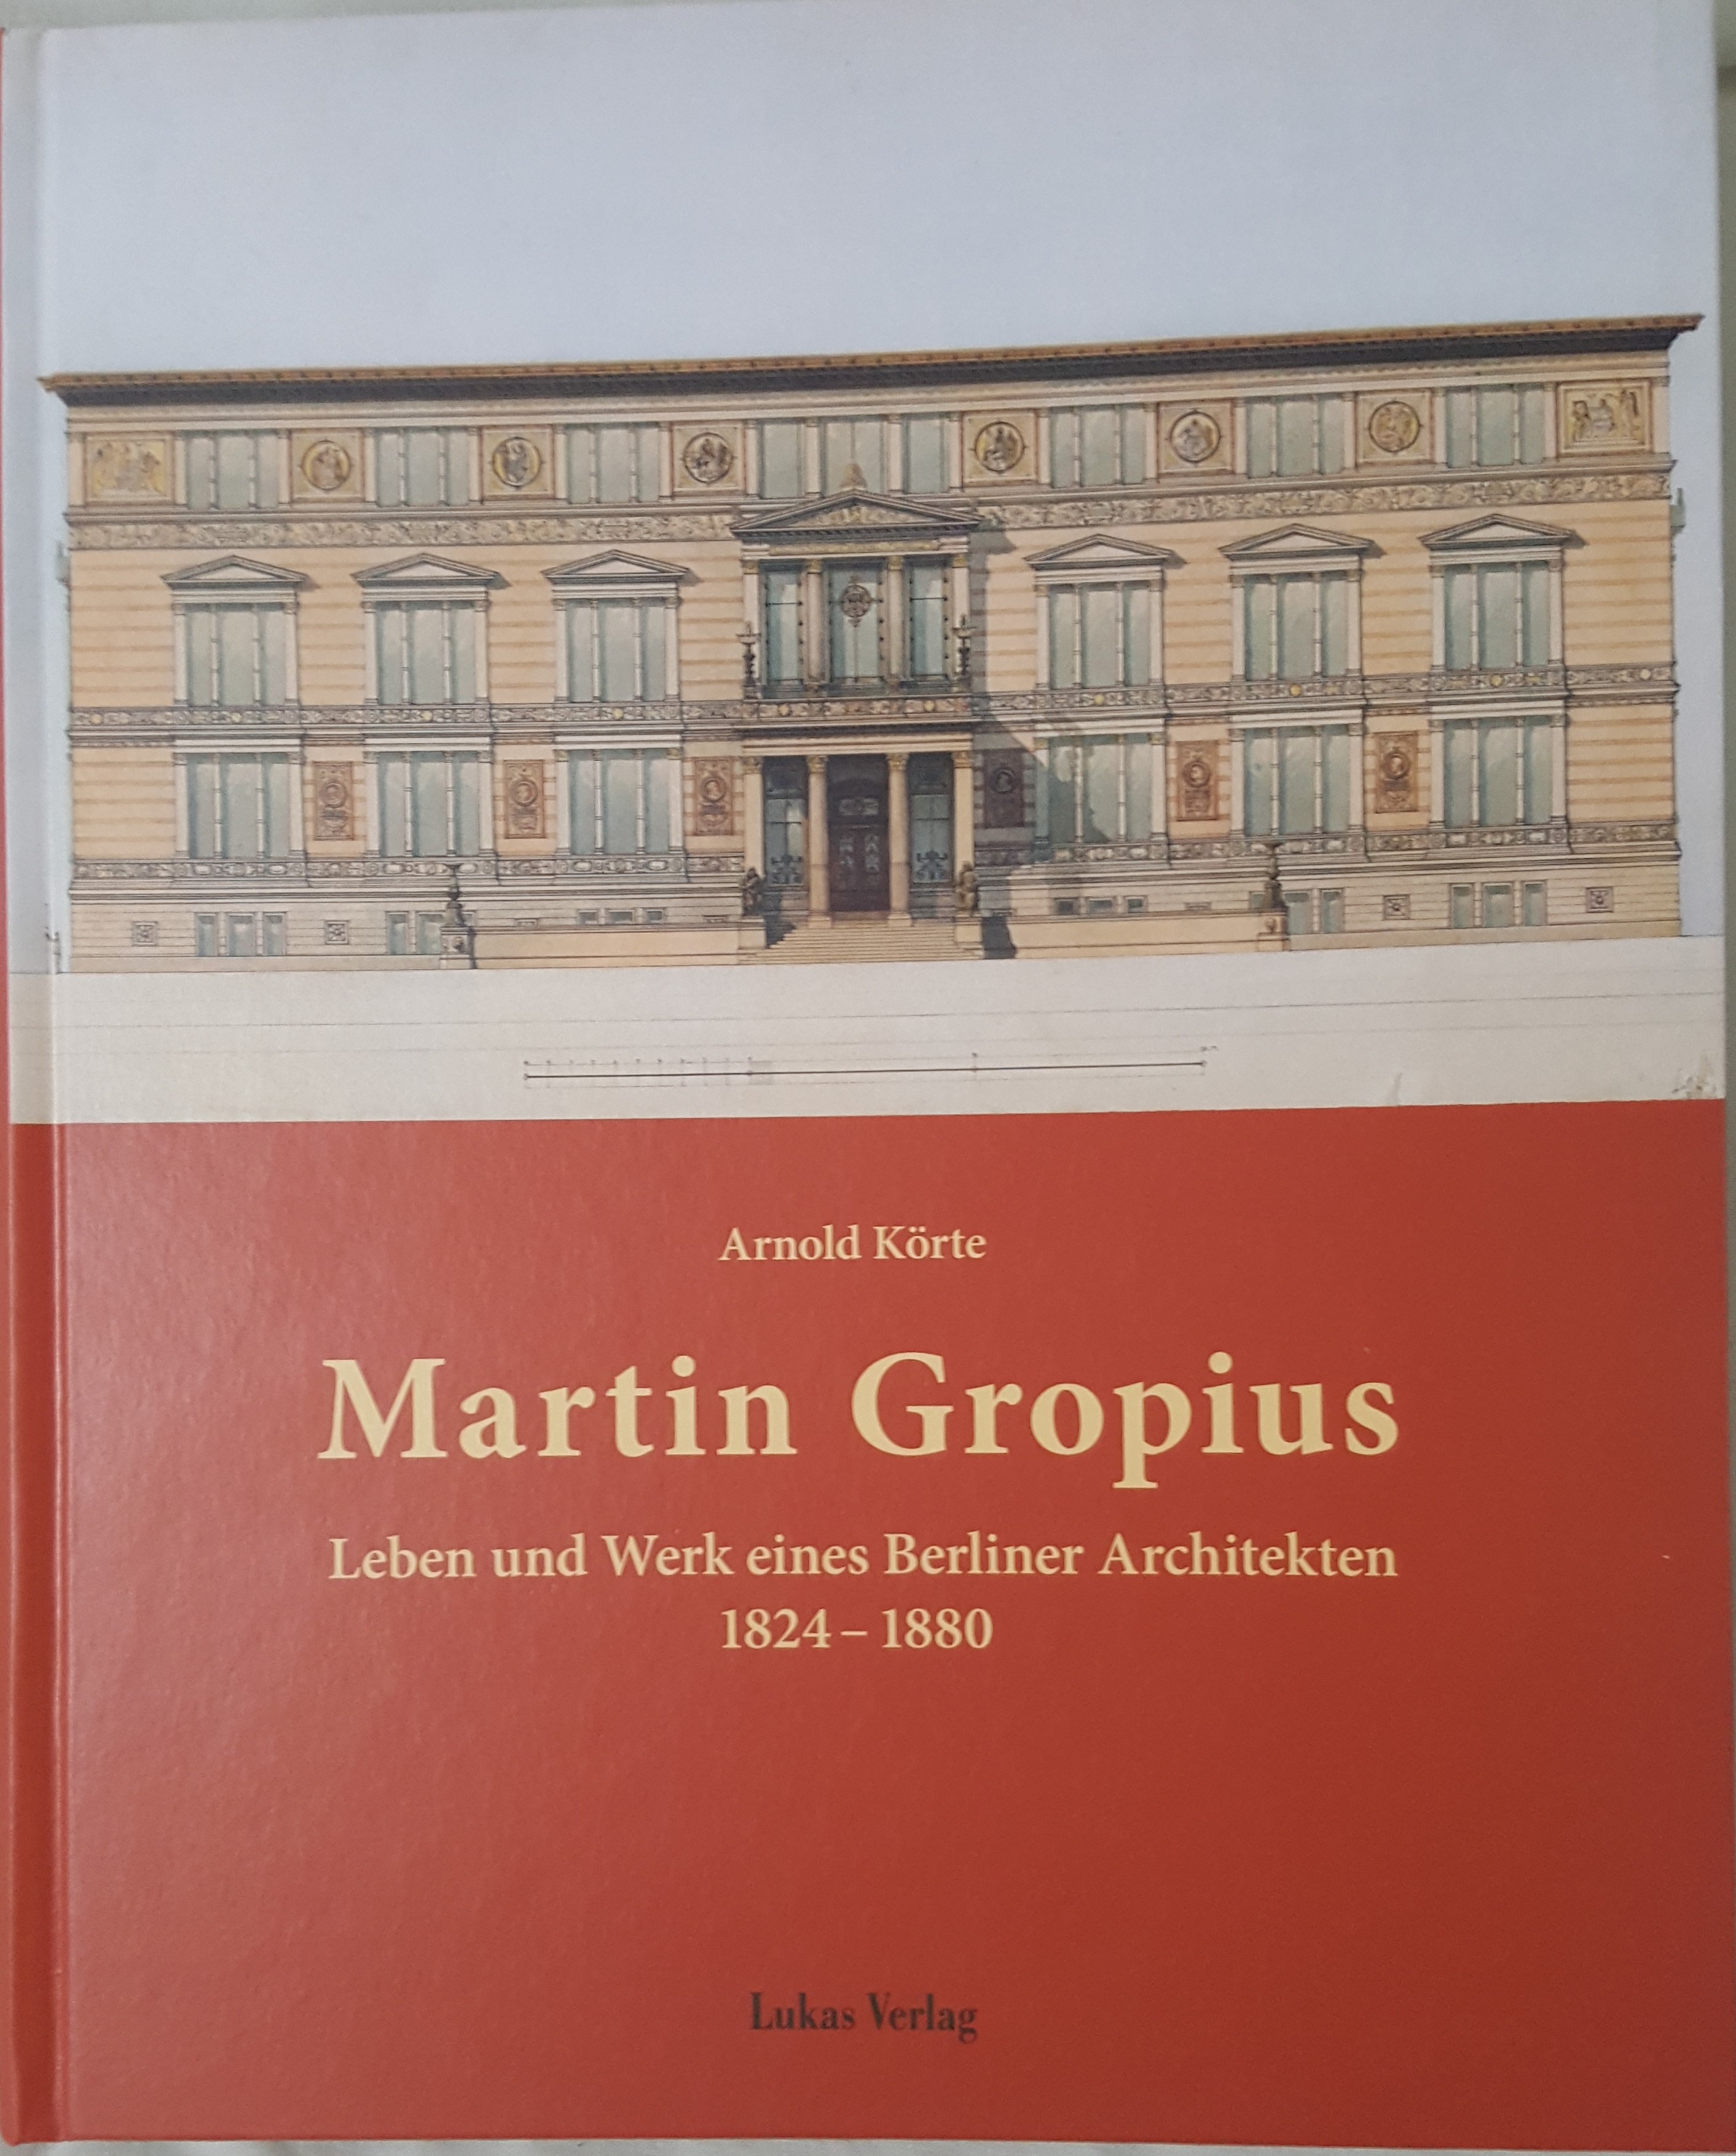 - Martin Gropius: Leben und Werk eines Berliner Architekten (1824 - 1880).